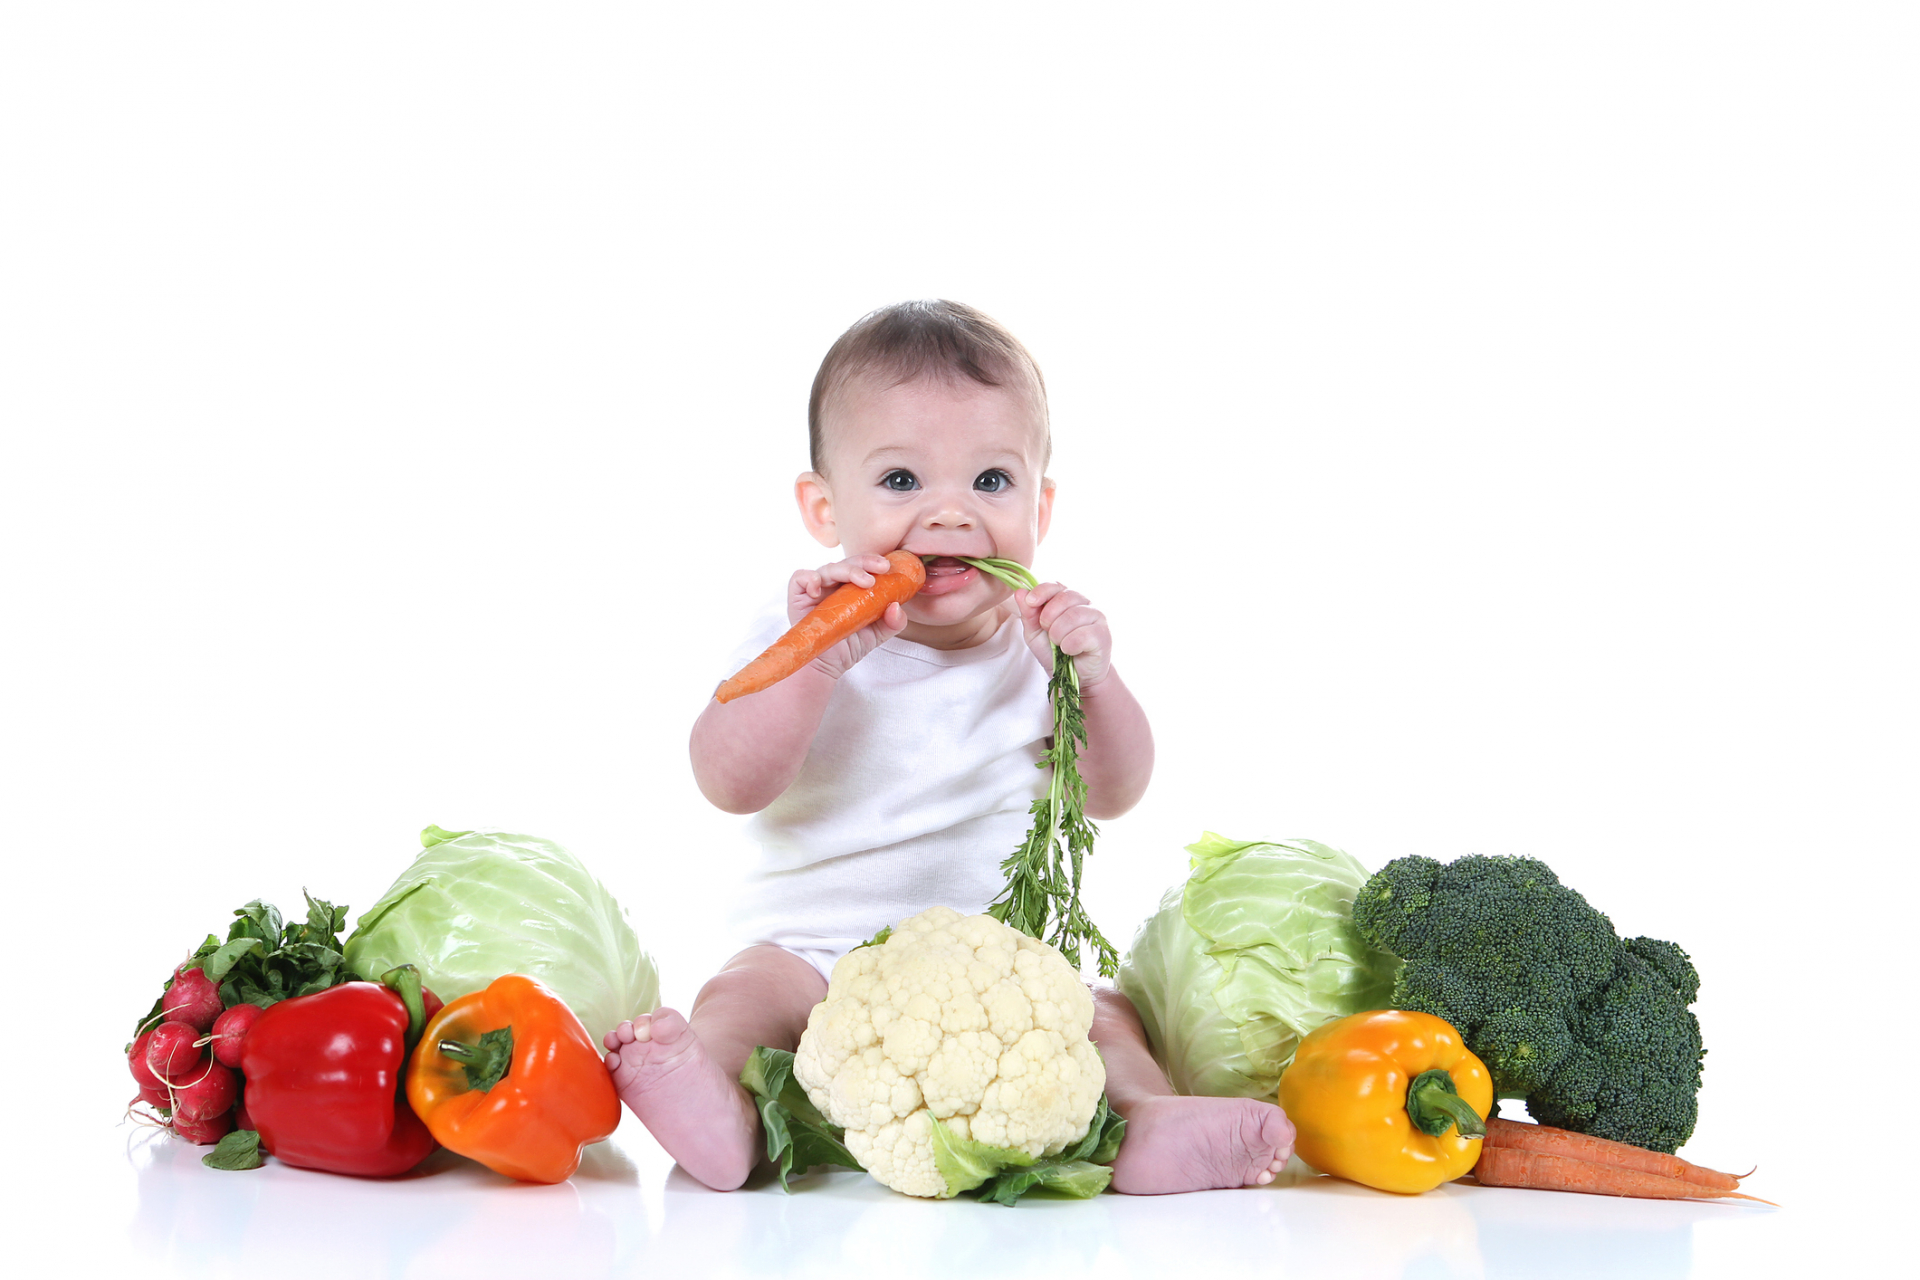 Cha mẹ nên nuôi con cân đối, với chế độ dinh dưỡng có đủ các thành phần để trẻ phát triển toàn diện, khỏe mạnh